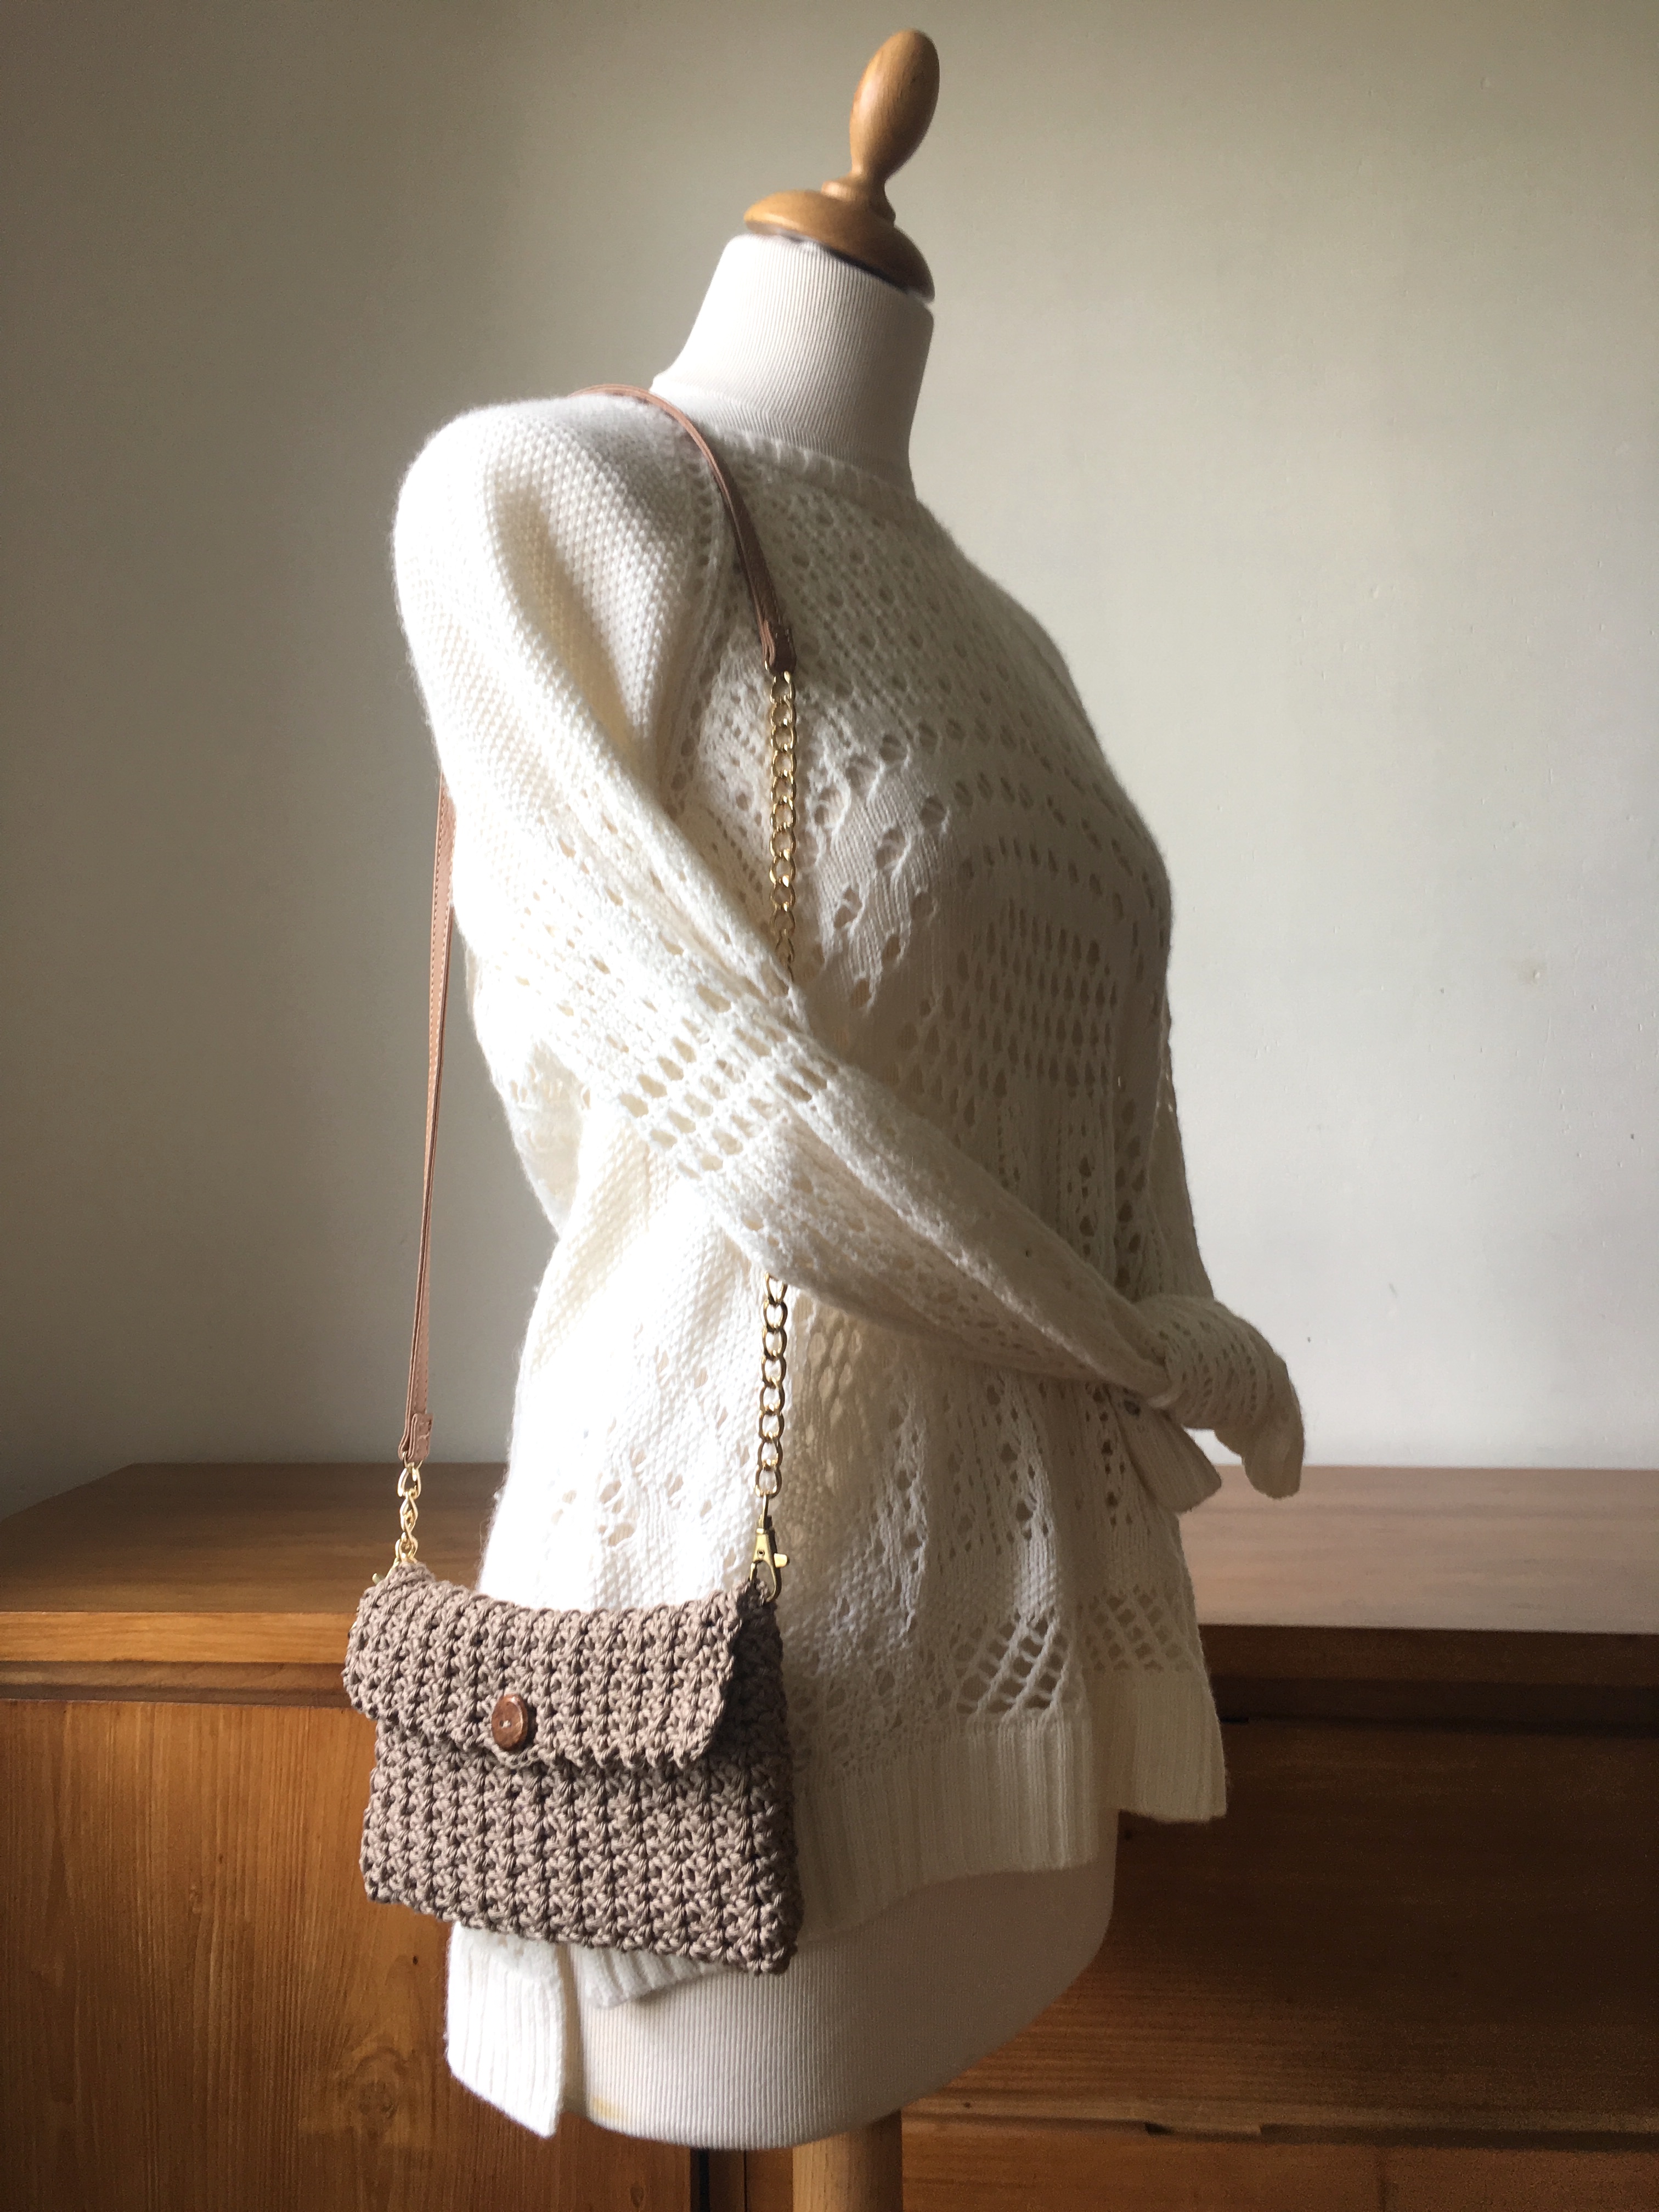 Crochet Clutch Bag Pattern - Easy Crochet